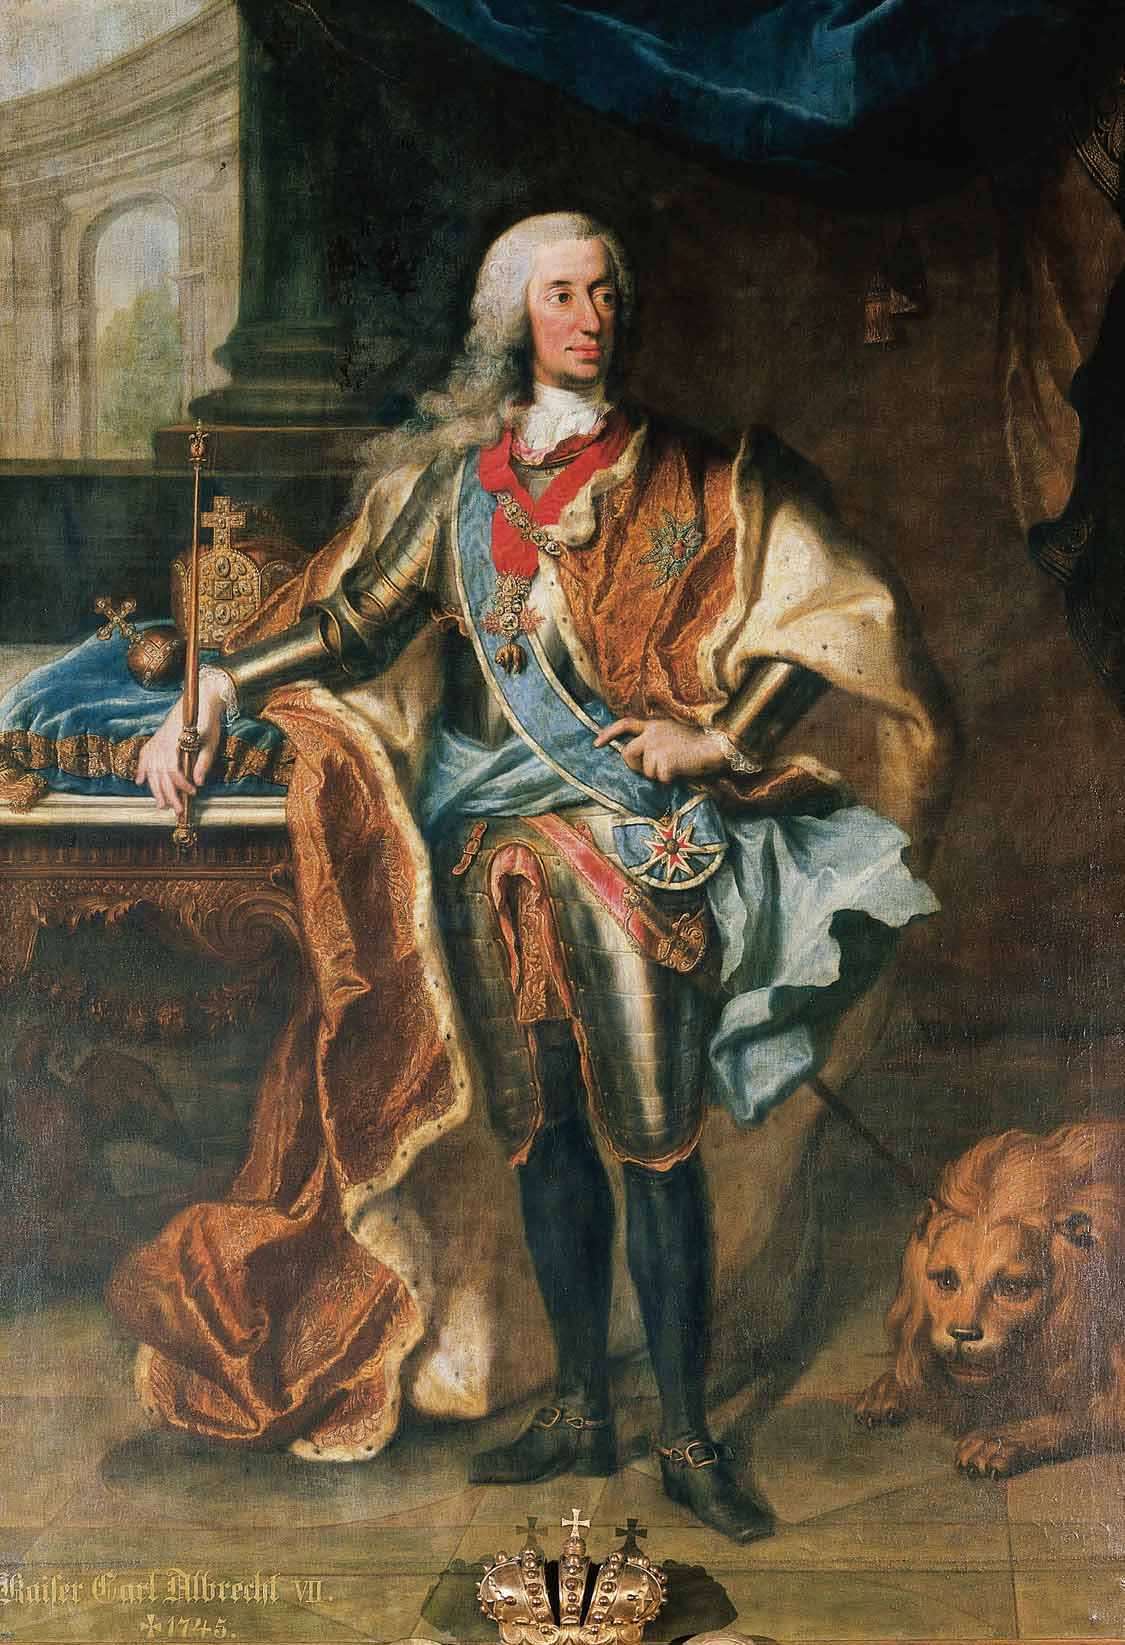 Porträtgemälde von Karl Albrecht als König. Nymphenburg.